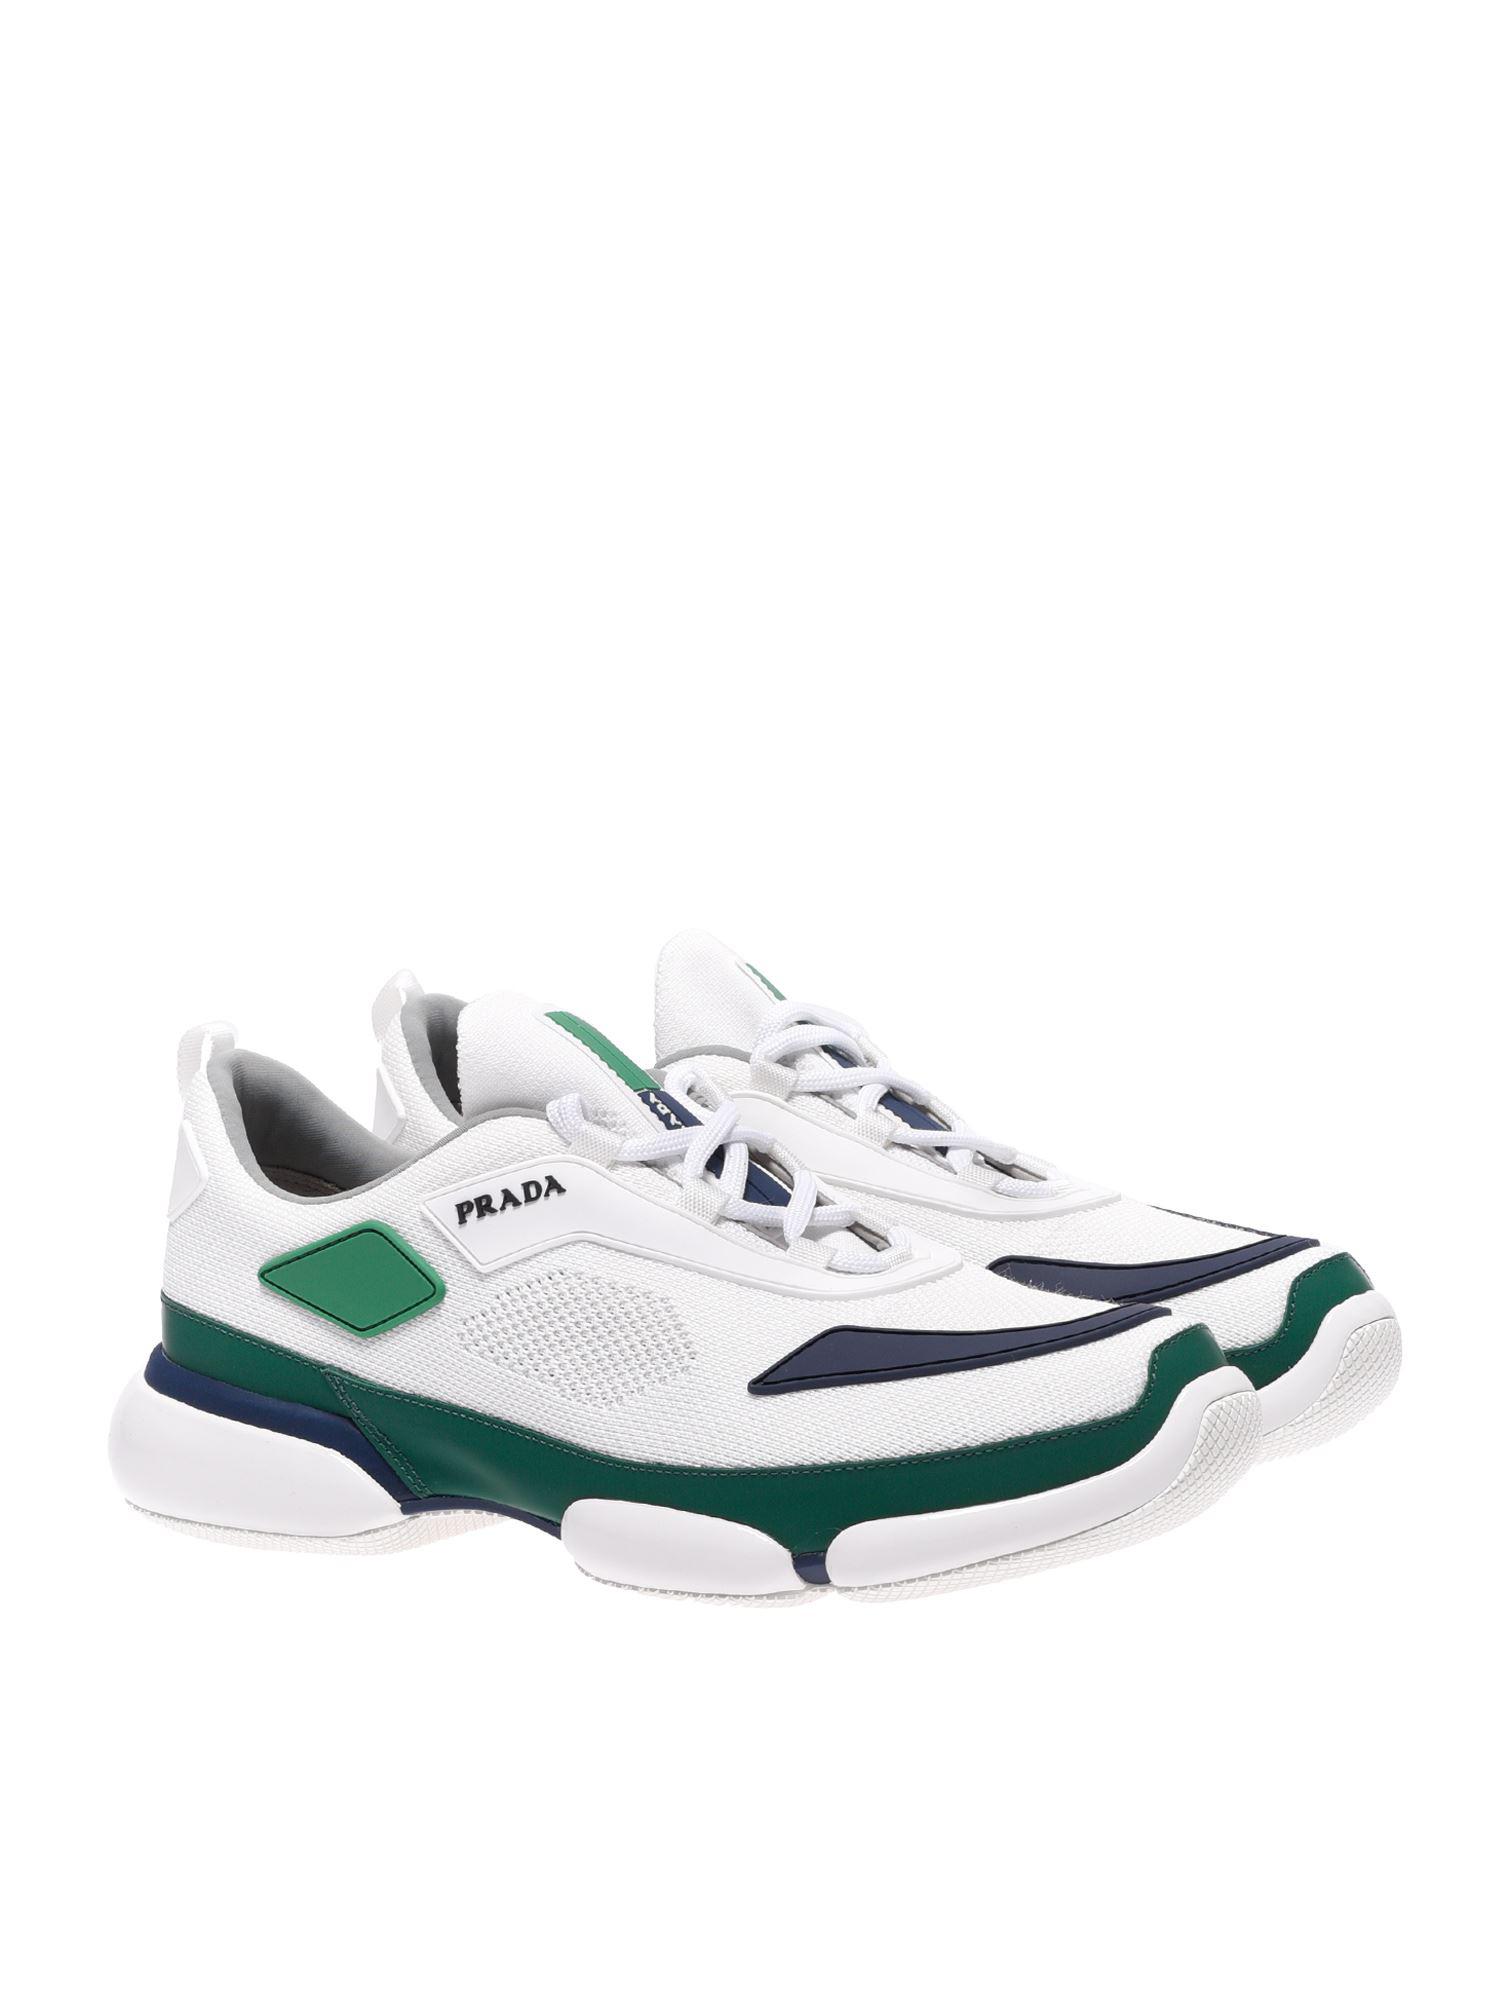 green prada sneakers